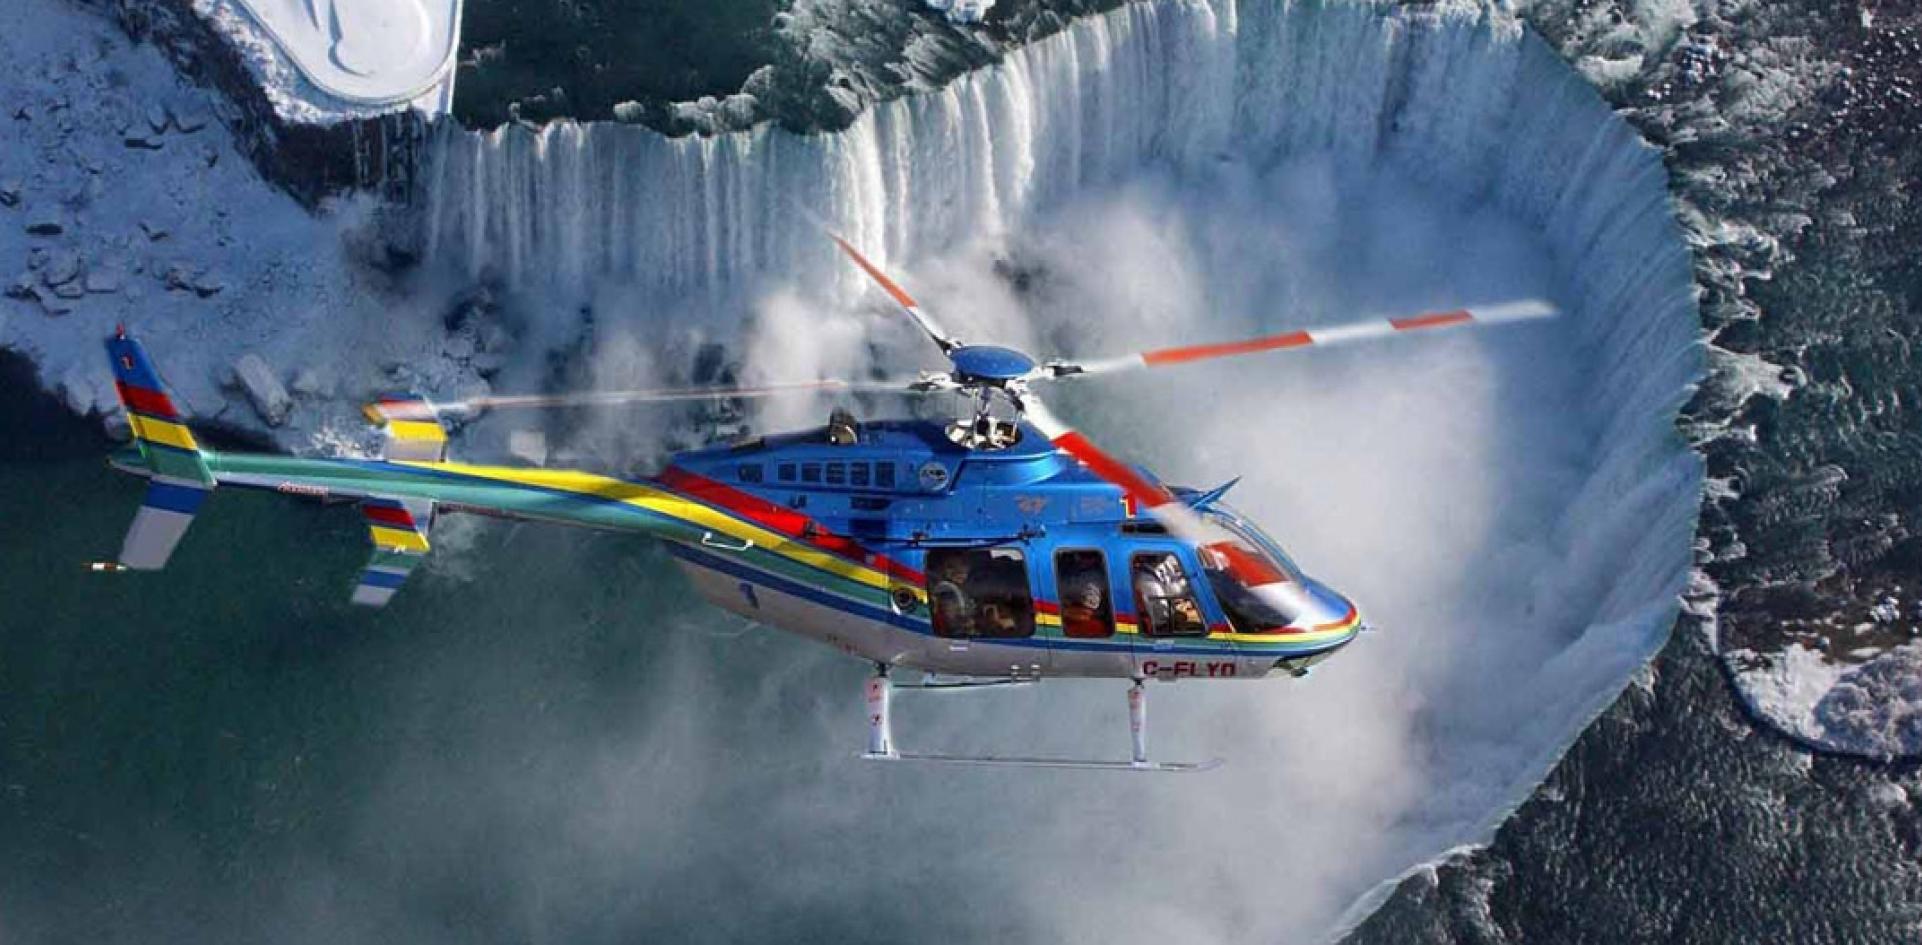 niagara falls heliopter